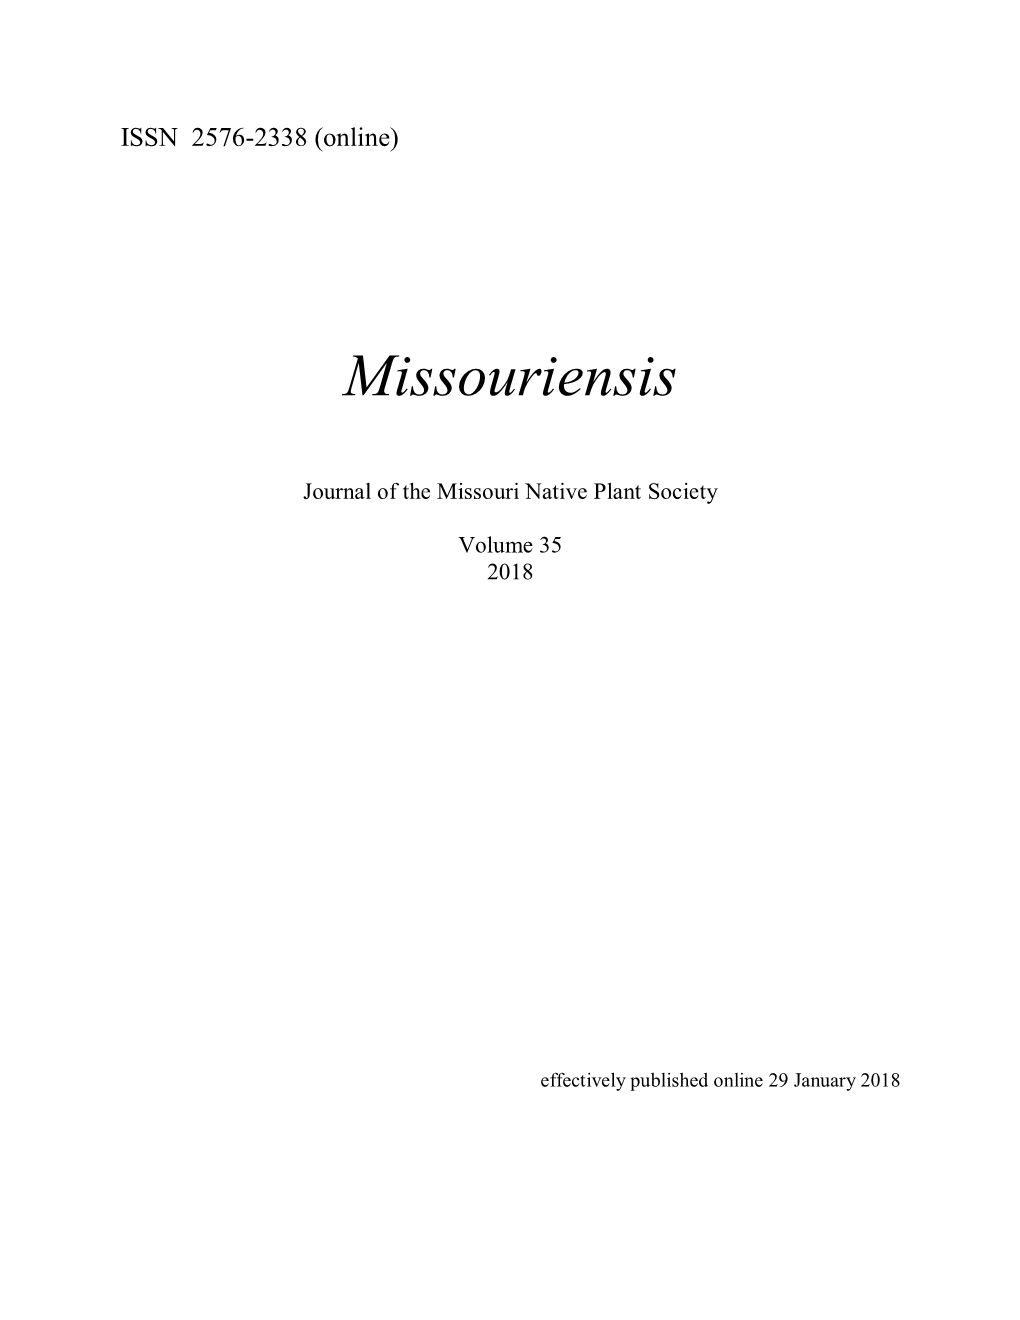 Missouriensis